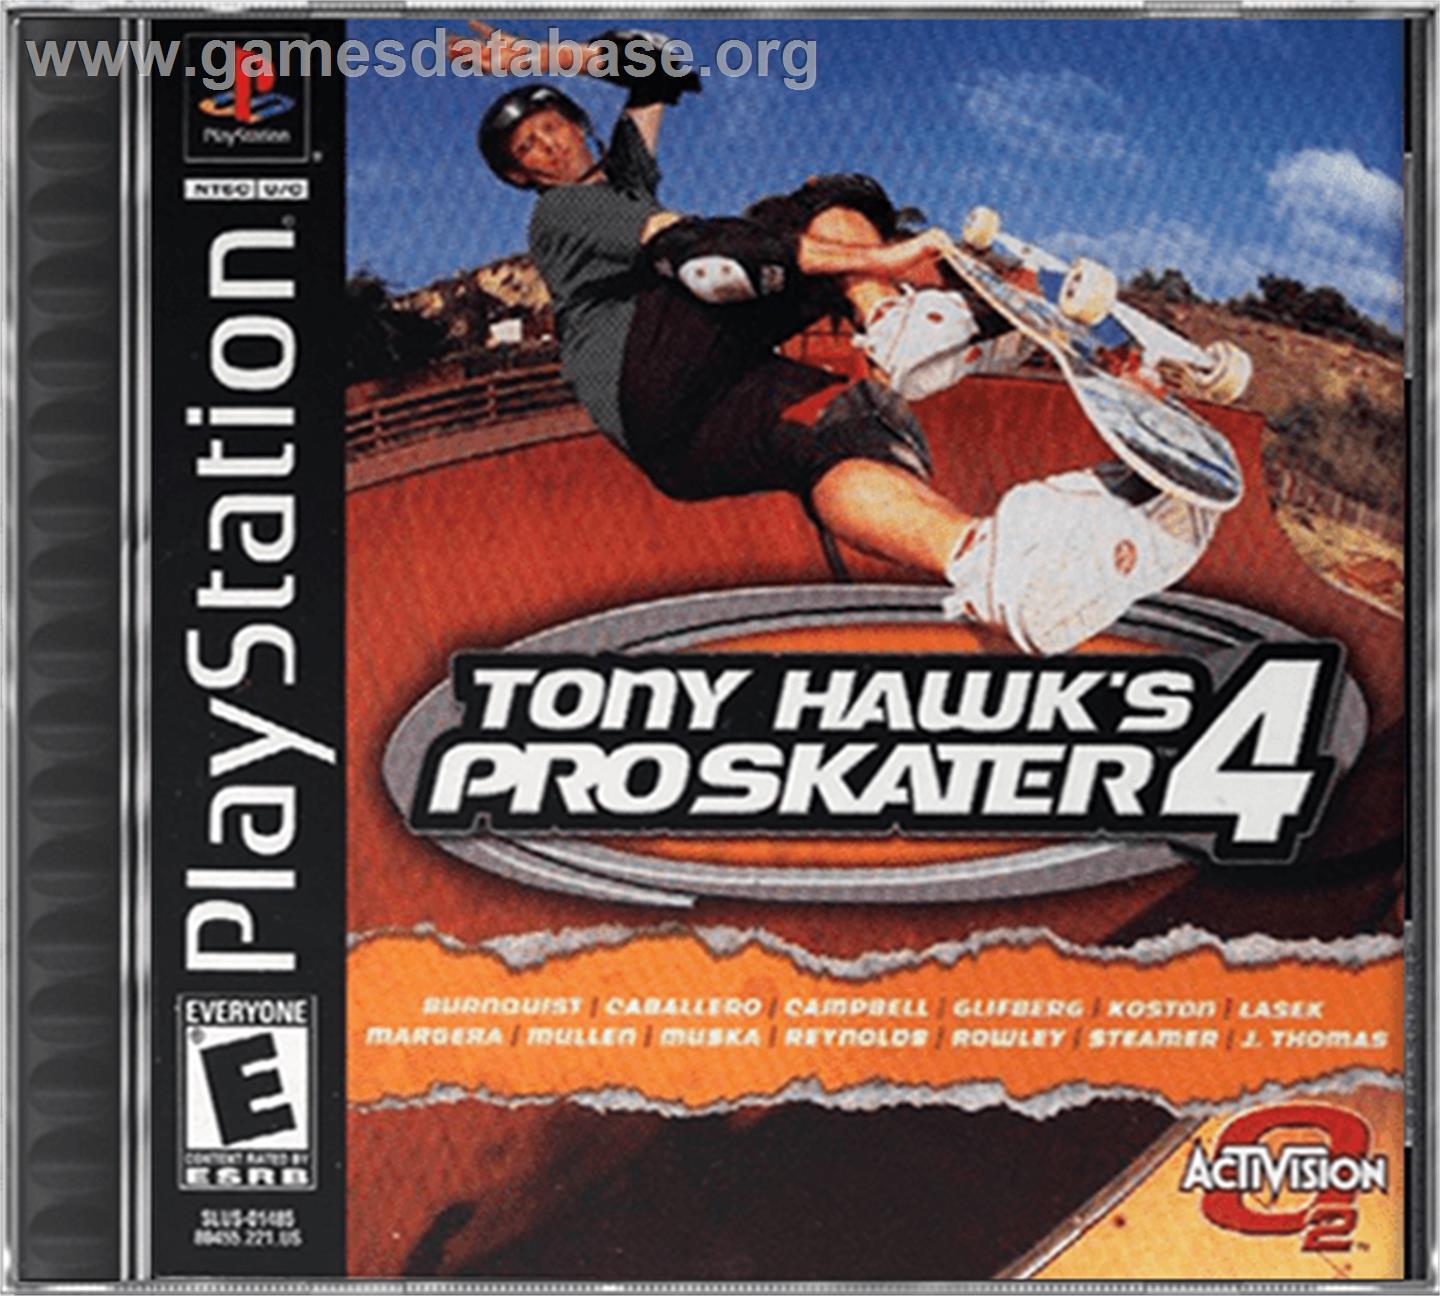 Tony Hawk's Pro Skater 4 - Sony Playstation - Artwork - Box